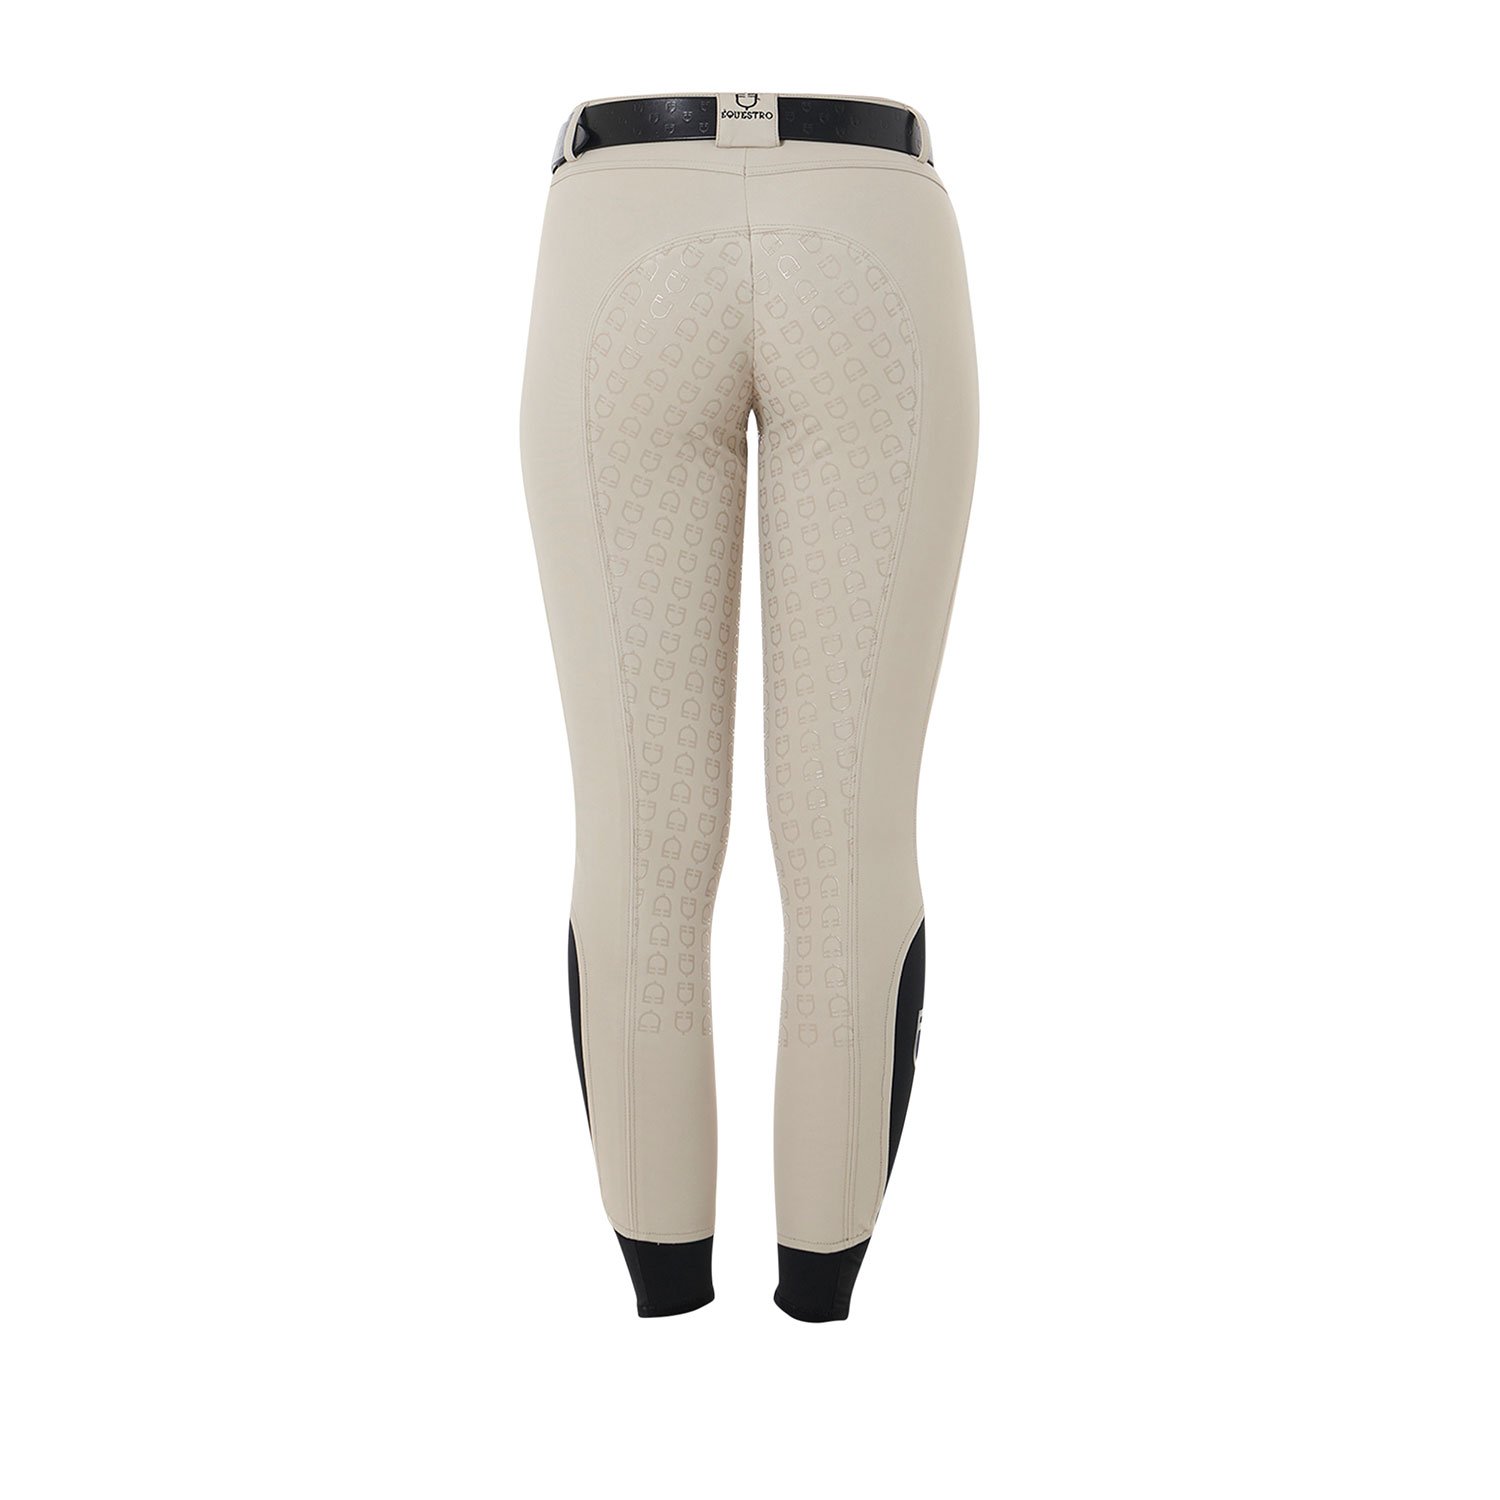 Pantaloni estivi equitazione donna modello Aria slim fit in tessuto tecnico con Full Grip - foto 4